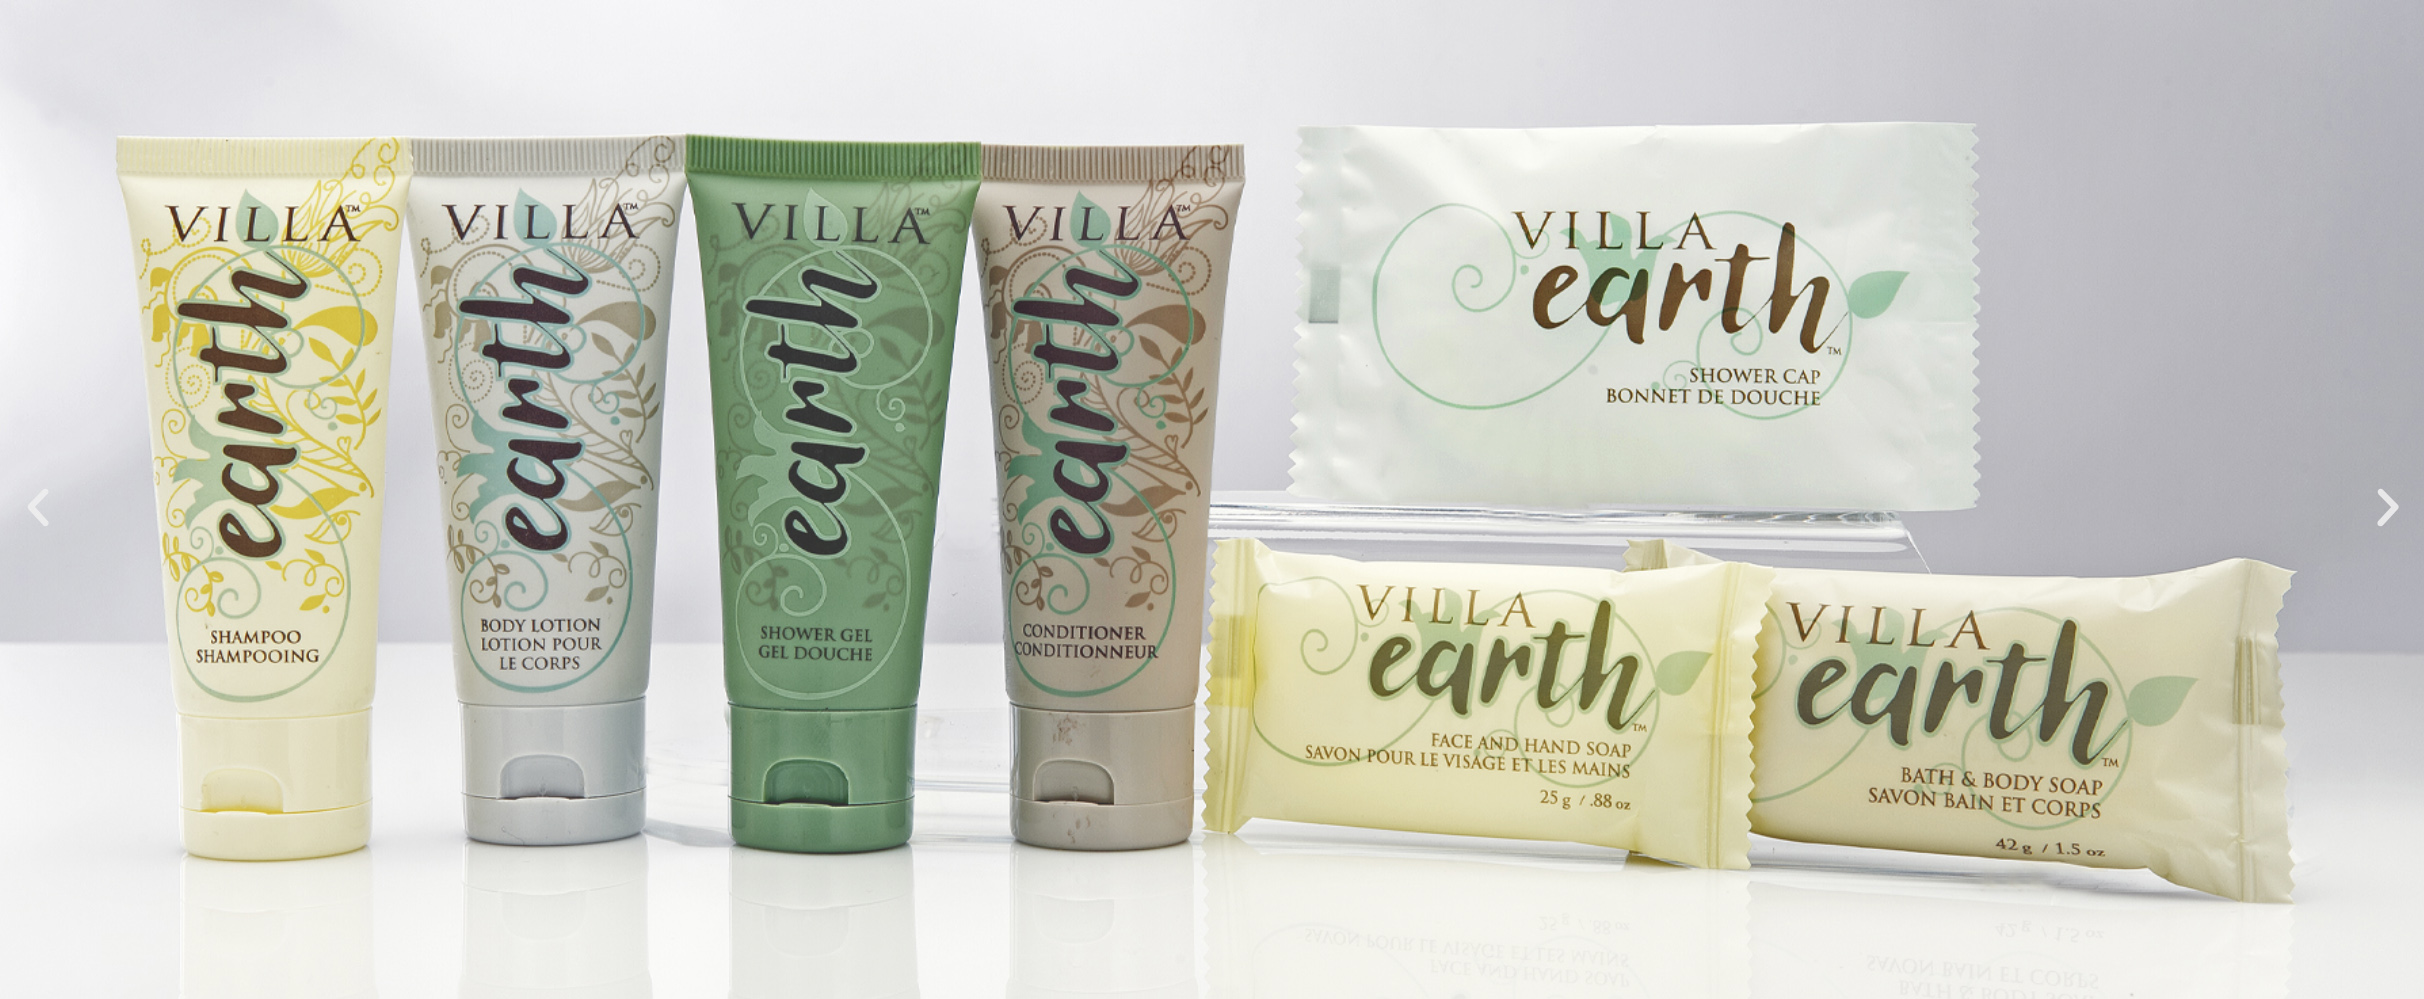 Villa Earth packaging